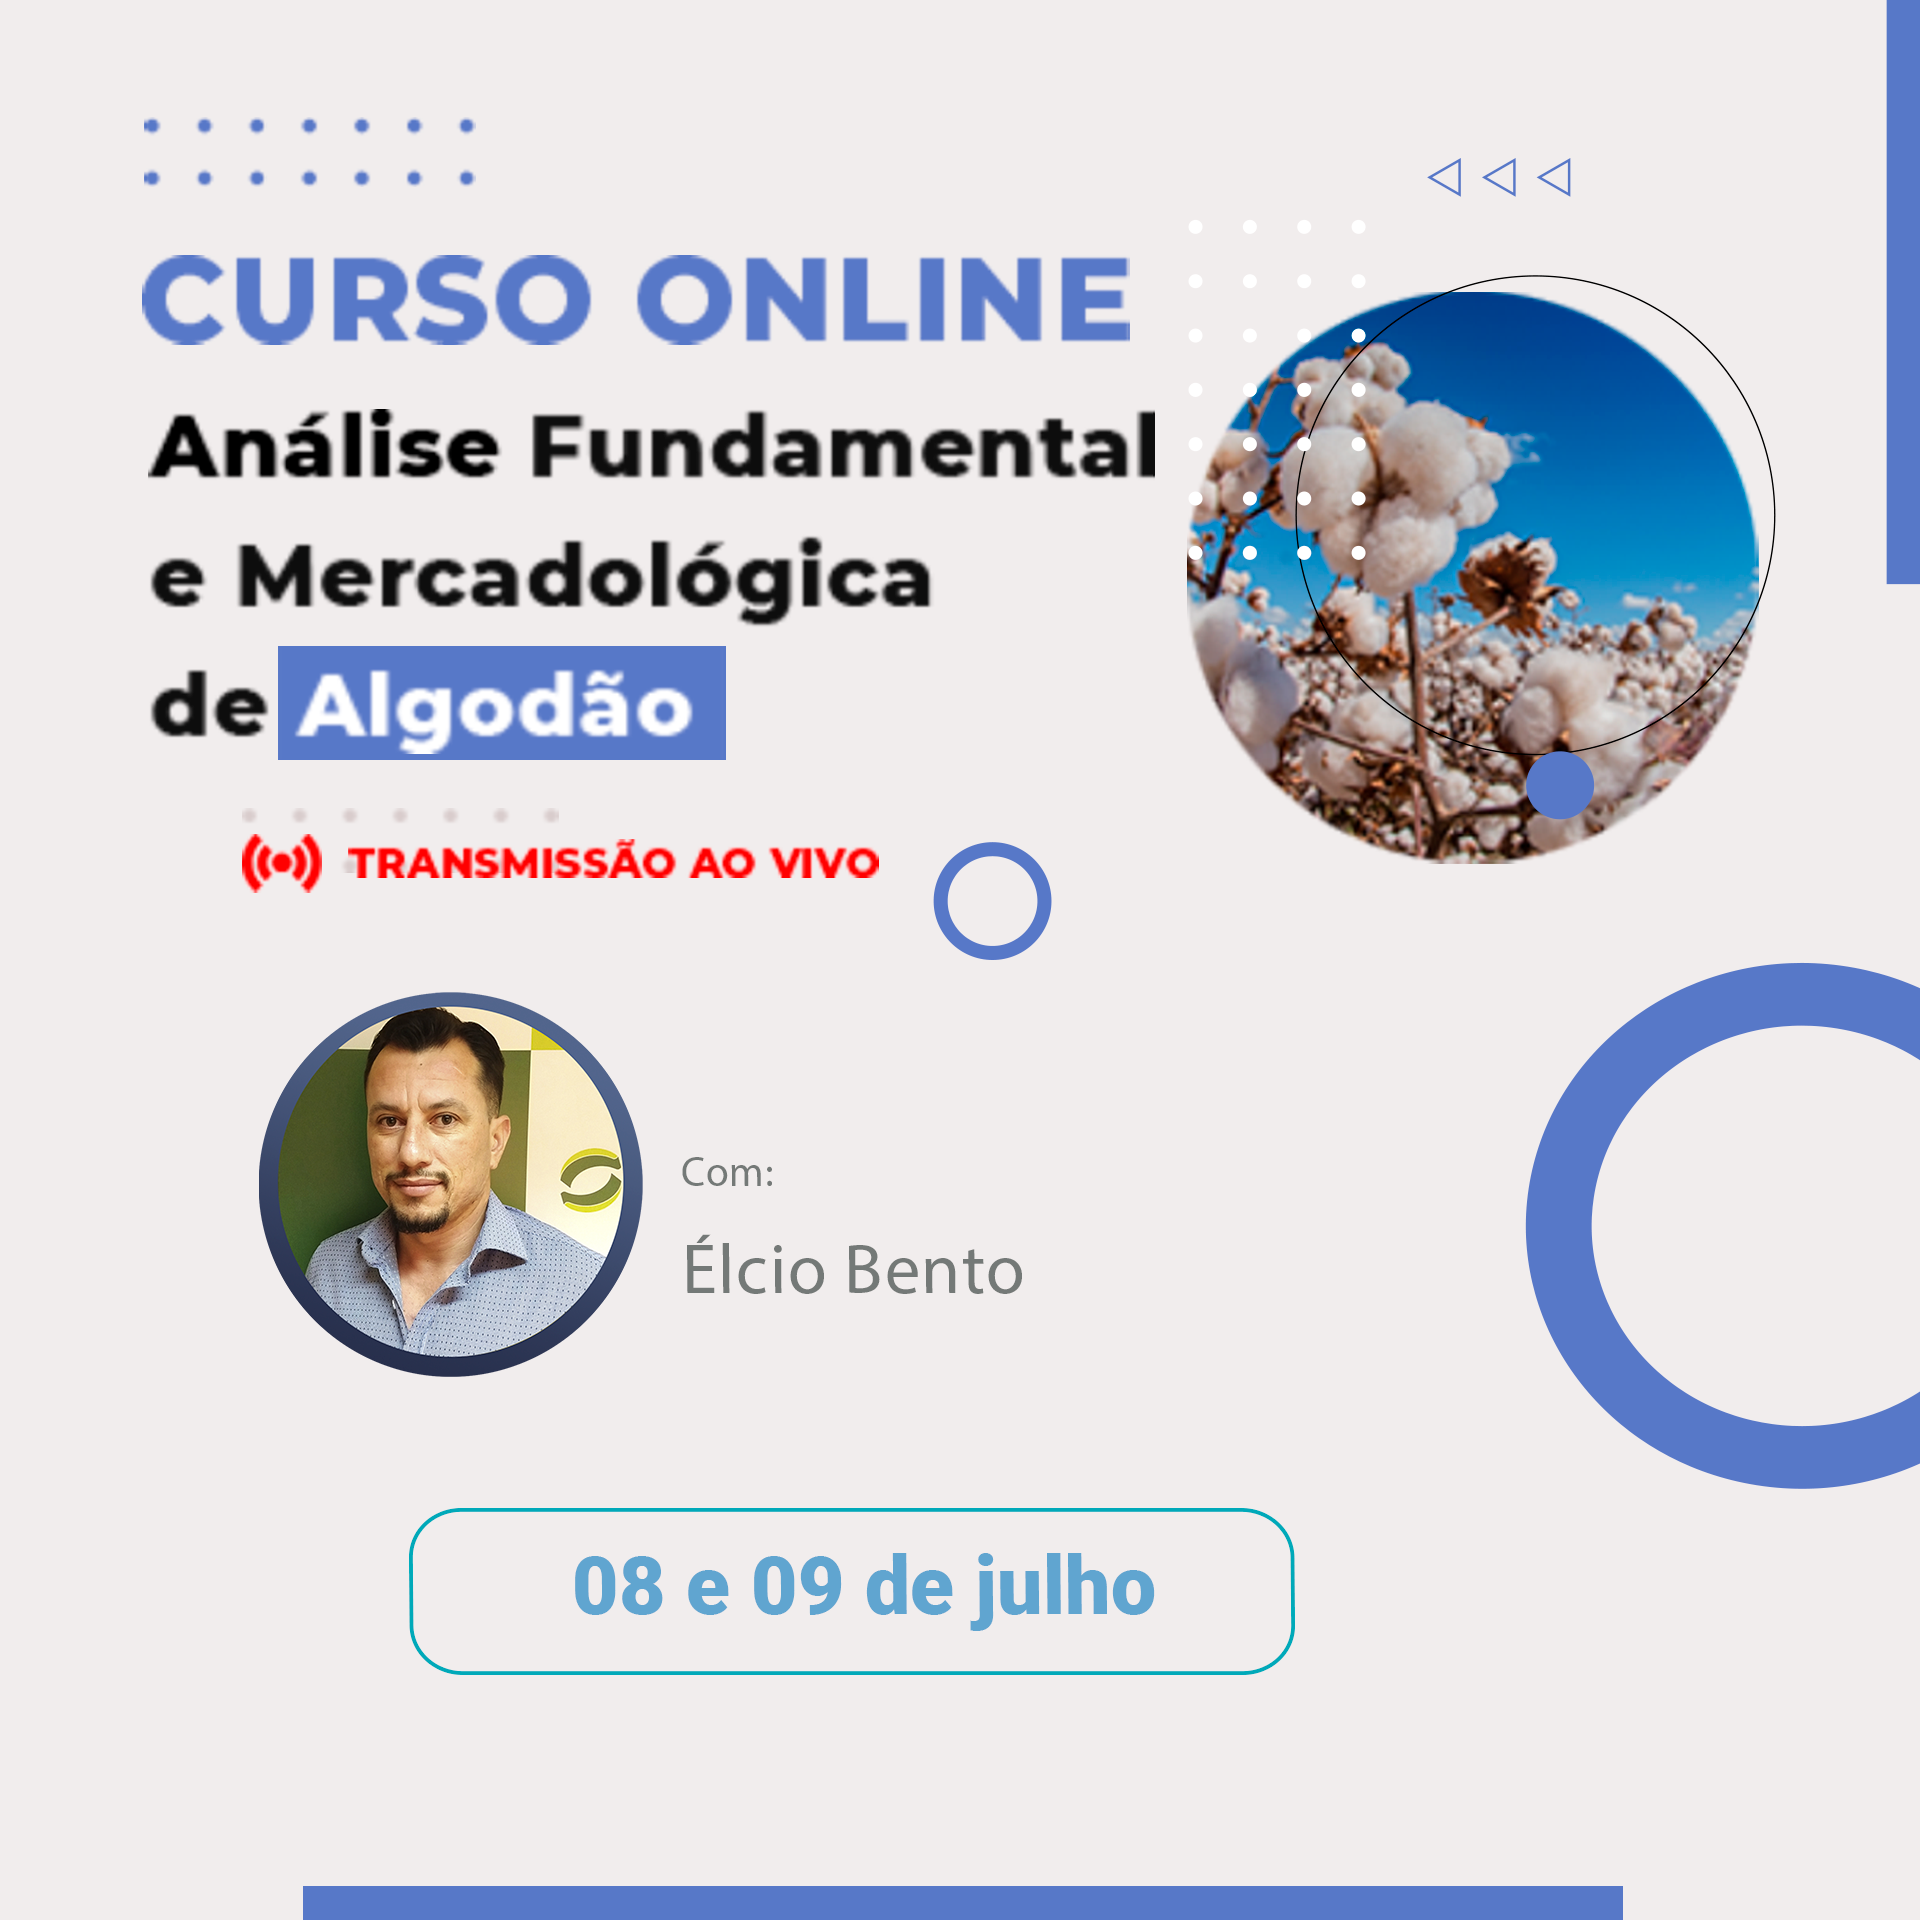 Curso online Análise Fundamental e Mercadológica de Algodão